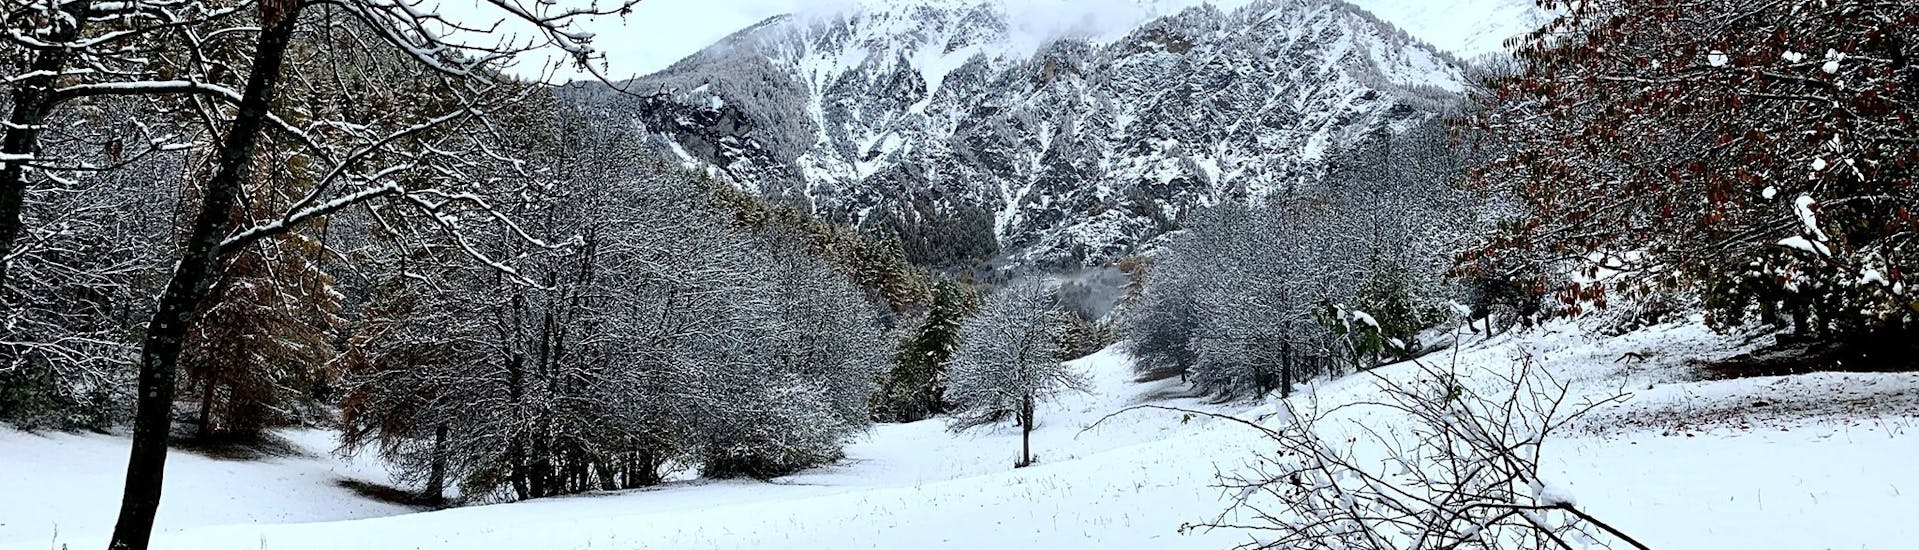 Verzauberte Landschaft in Bardonecchia. Ideales Szenario für einen der privaten Skikurse für Erwachsene aller Niveaus